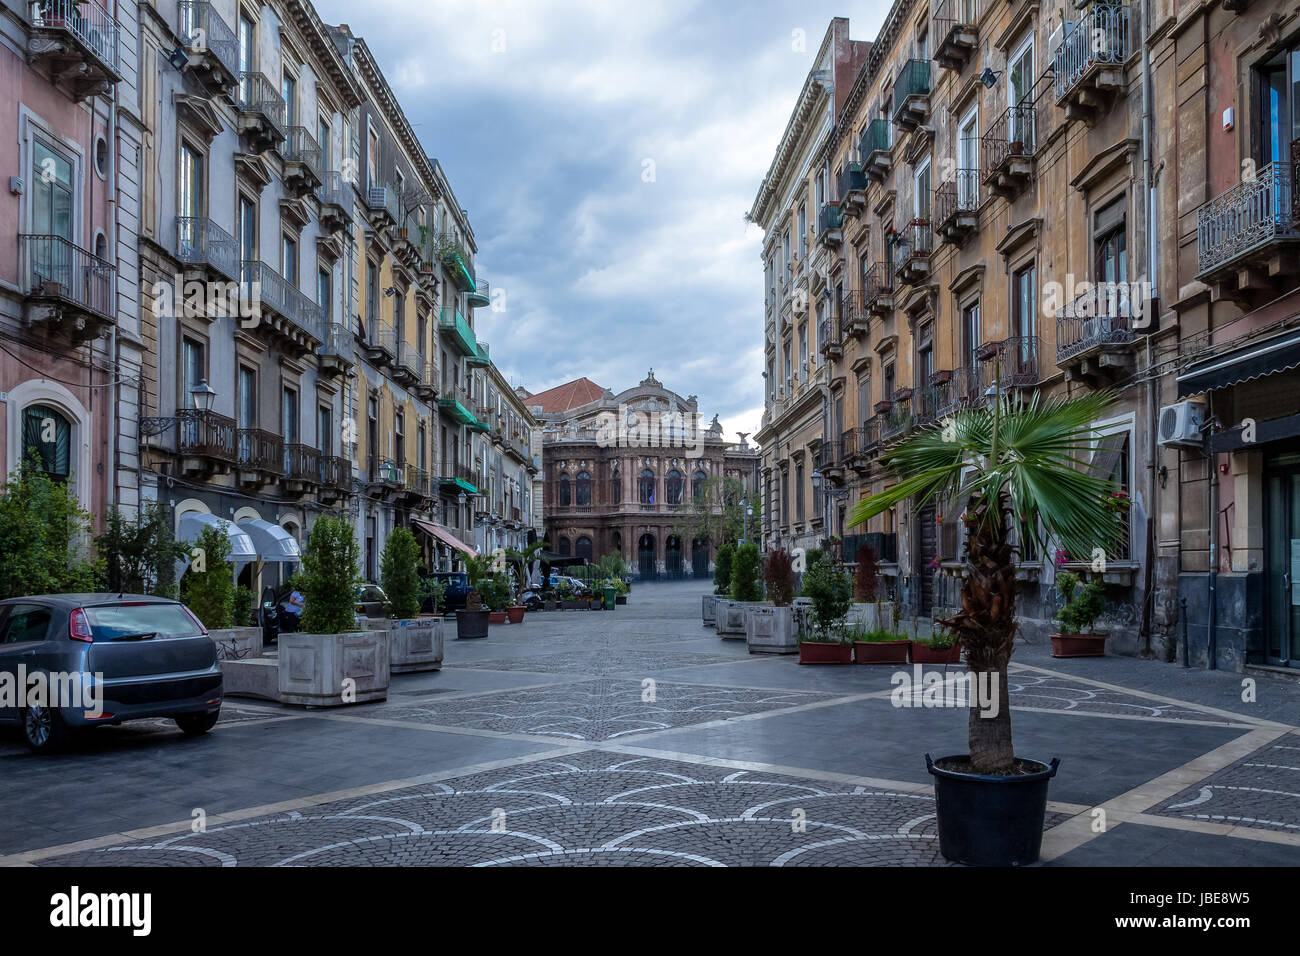 Strada di Catania con la famosa Opera teatro Teatro Bellini su sfondo - Catania, Sicilia, Italia Foto Stock